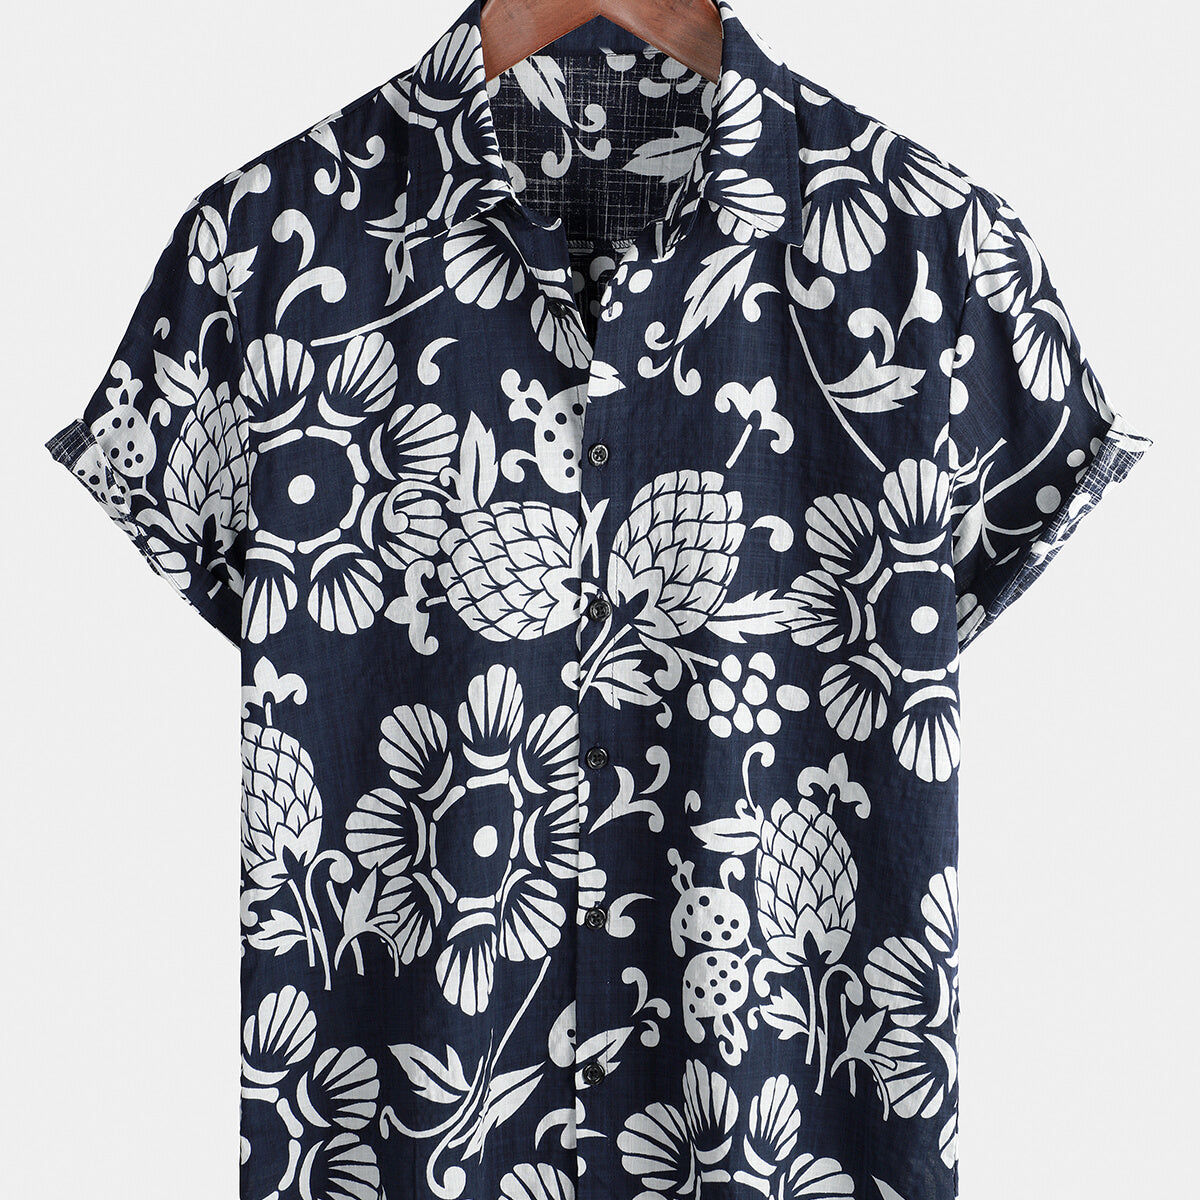 Men's Hawaiian Summer Floral Cotton Button up Short Sleeve Shirt